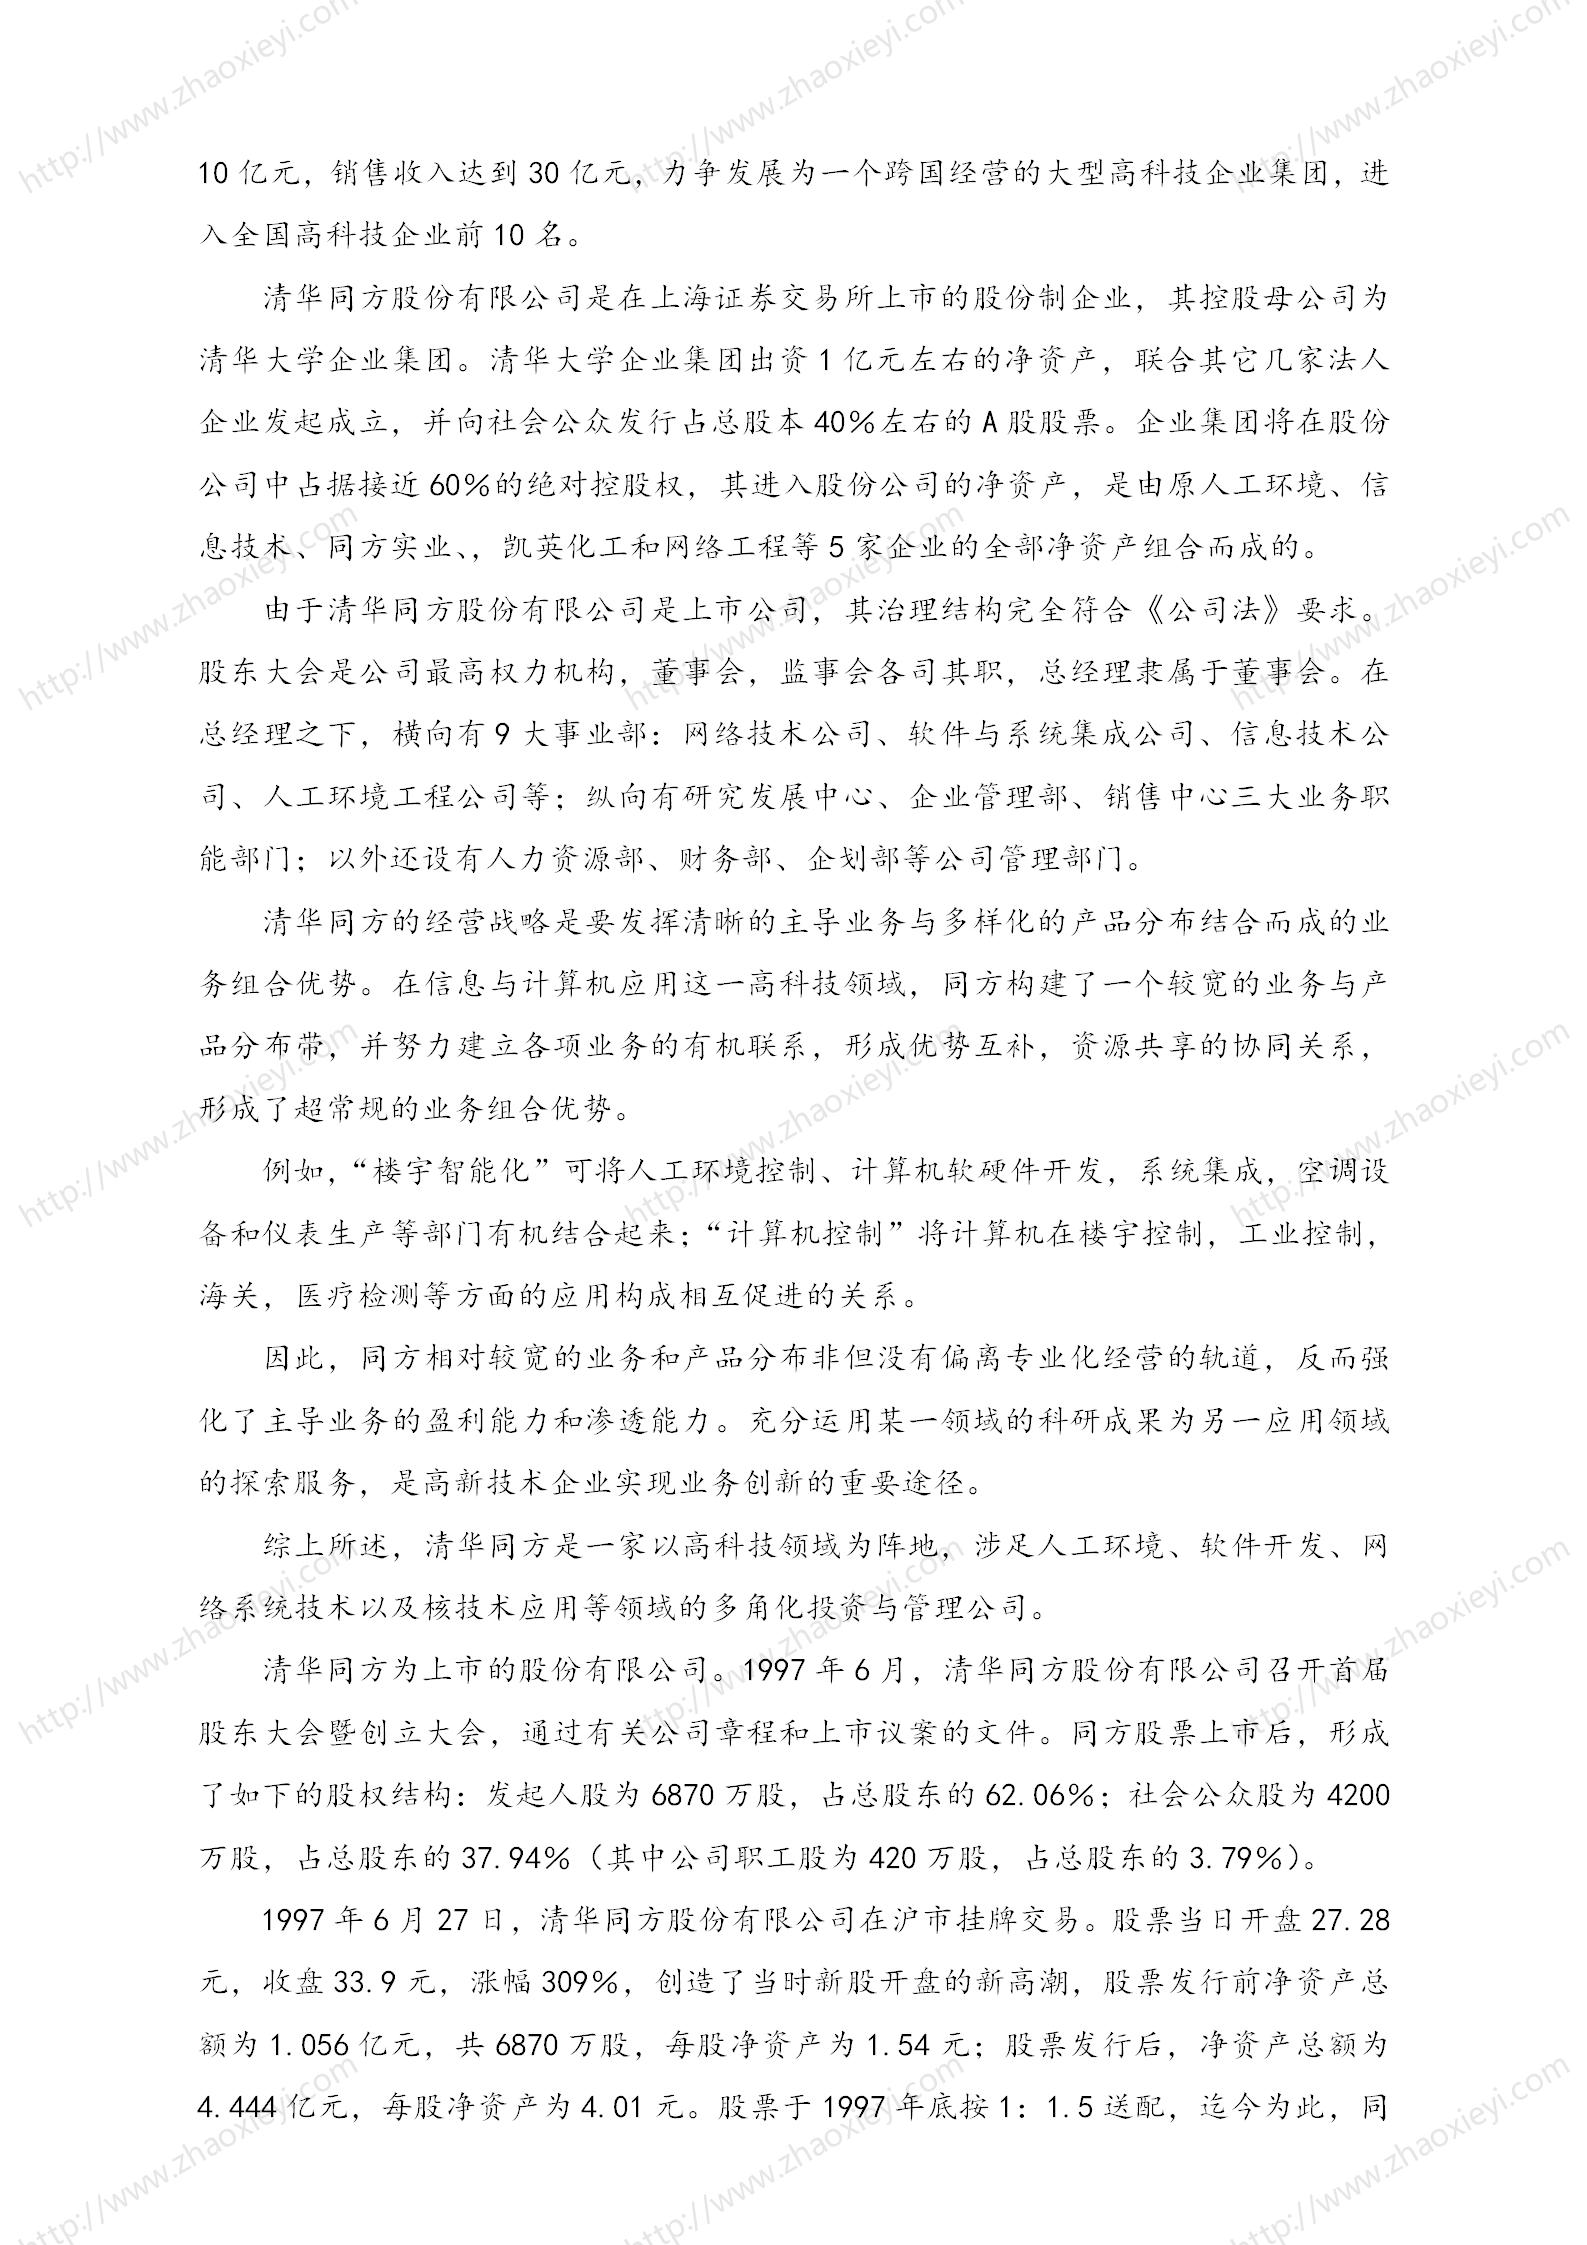 中国企业并购经典案例_94.jpg